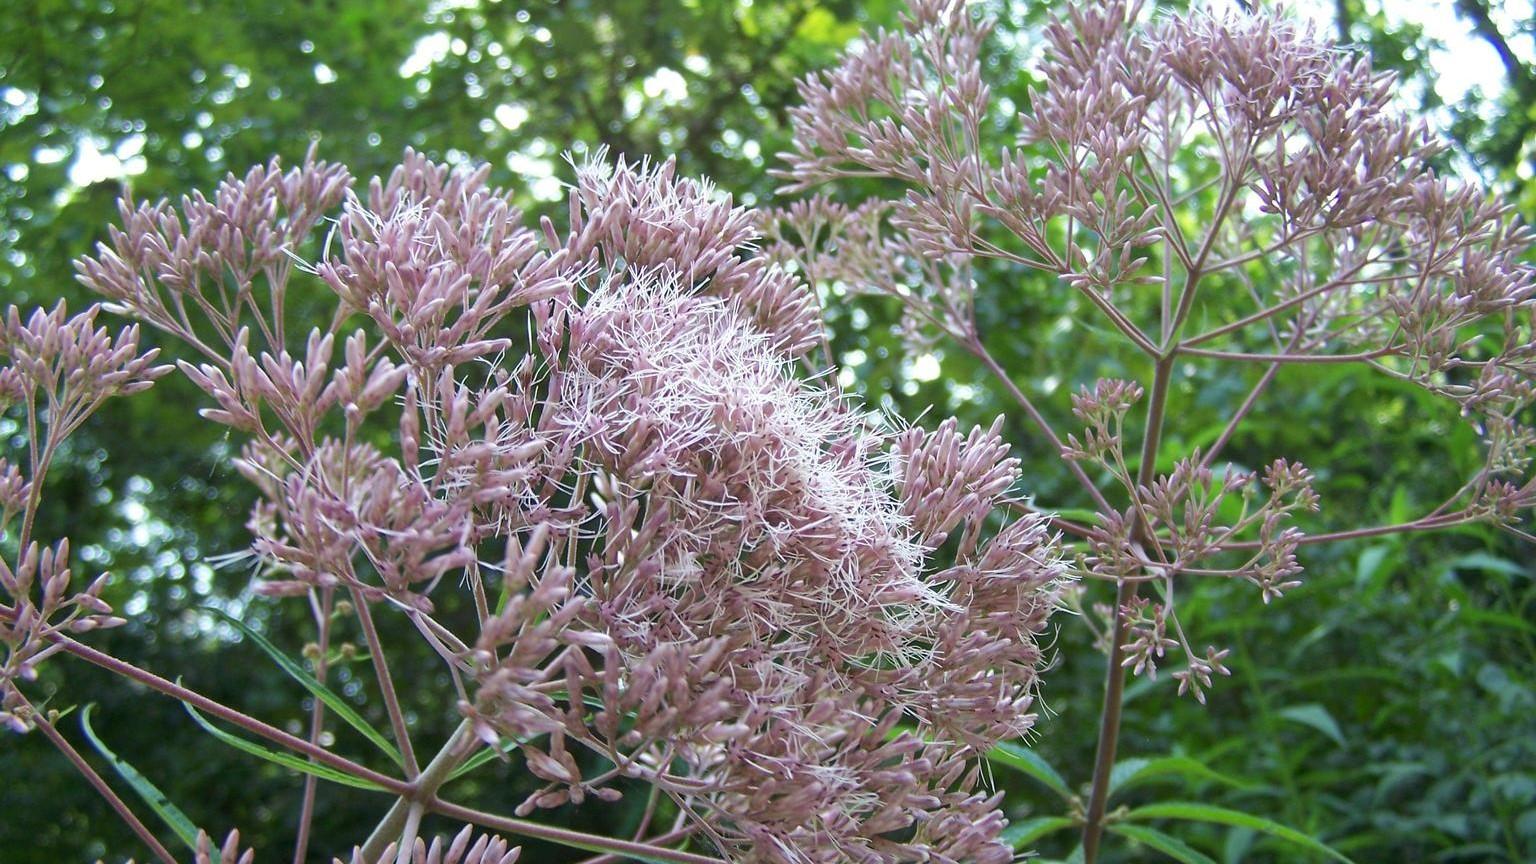 lavender flowers of native Joe Pye weed plants